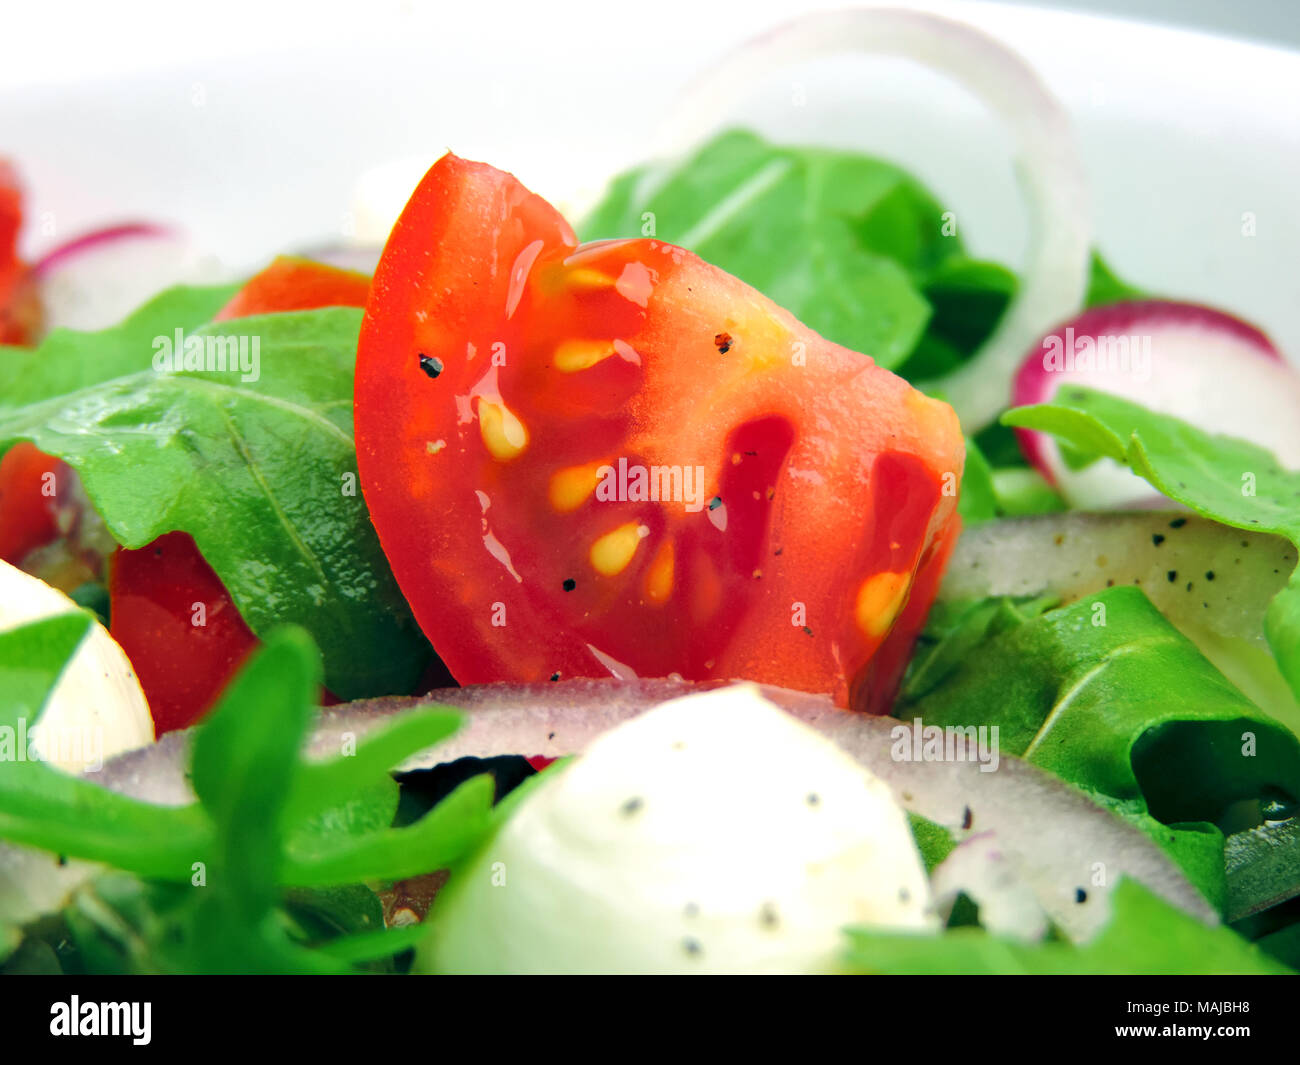 Gourmet Salat oder frisches Caprese Salat mit Tomaten, roten Zwiebeln, Rucola und Mozzarella auf einem weißen Teller. Nahaufnahme von frischen Salat. Stockfoto